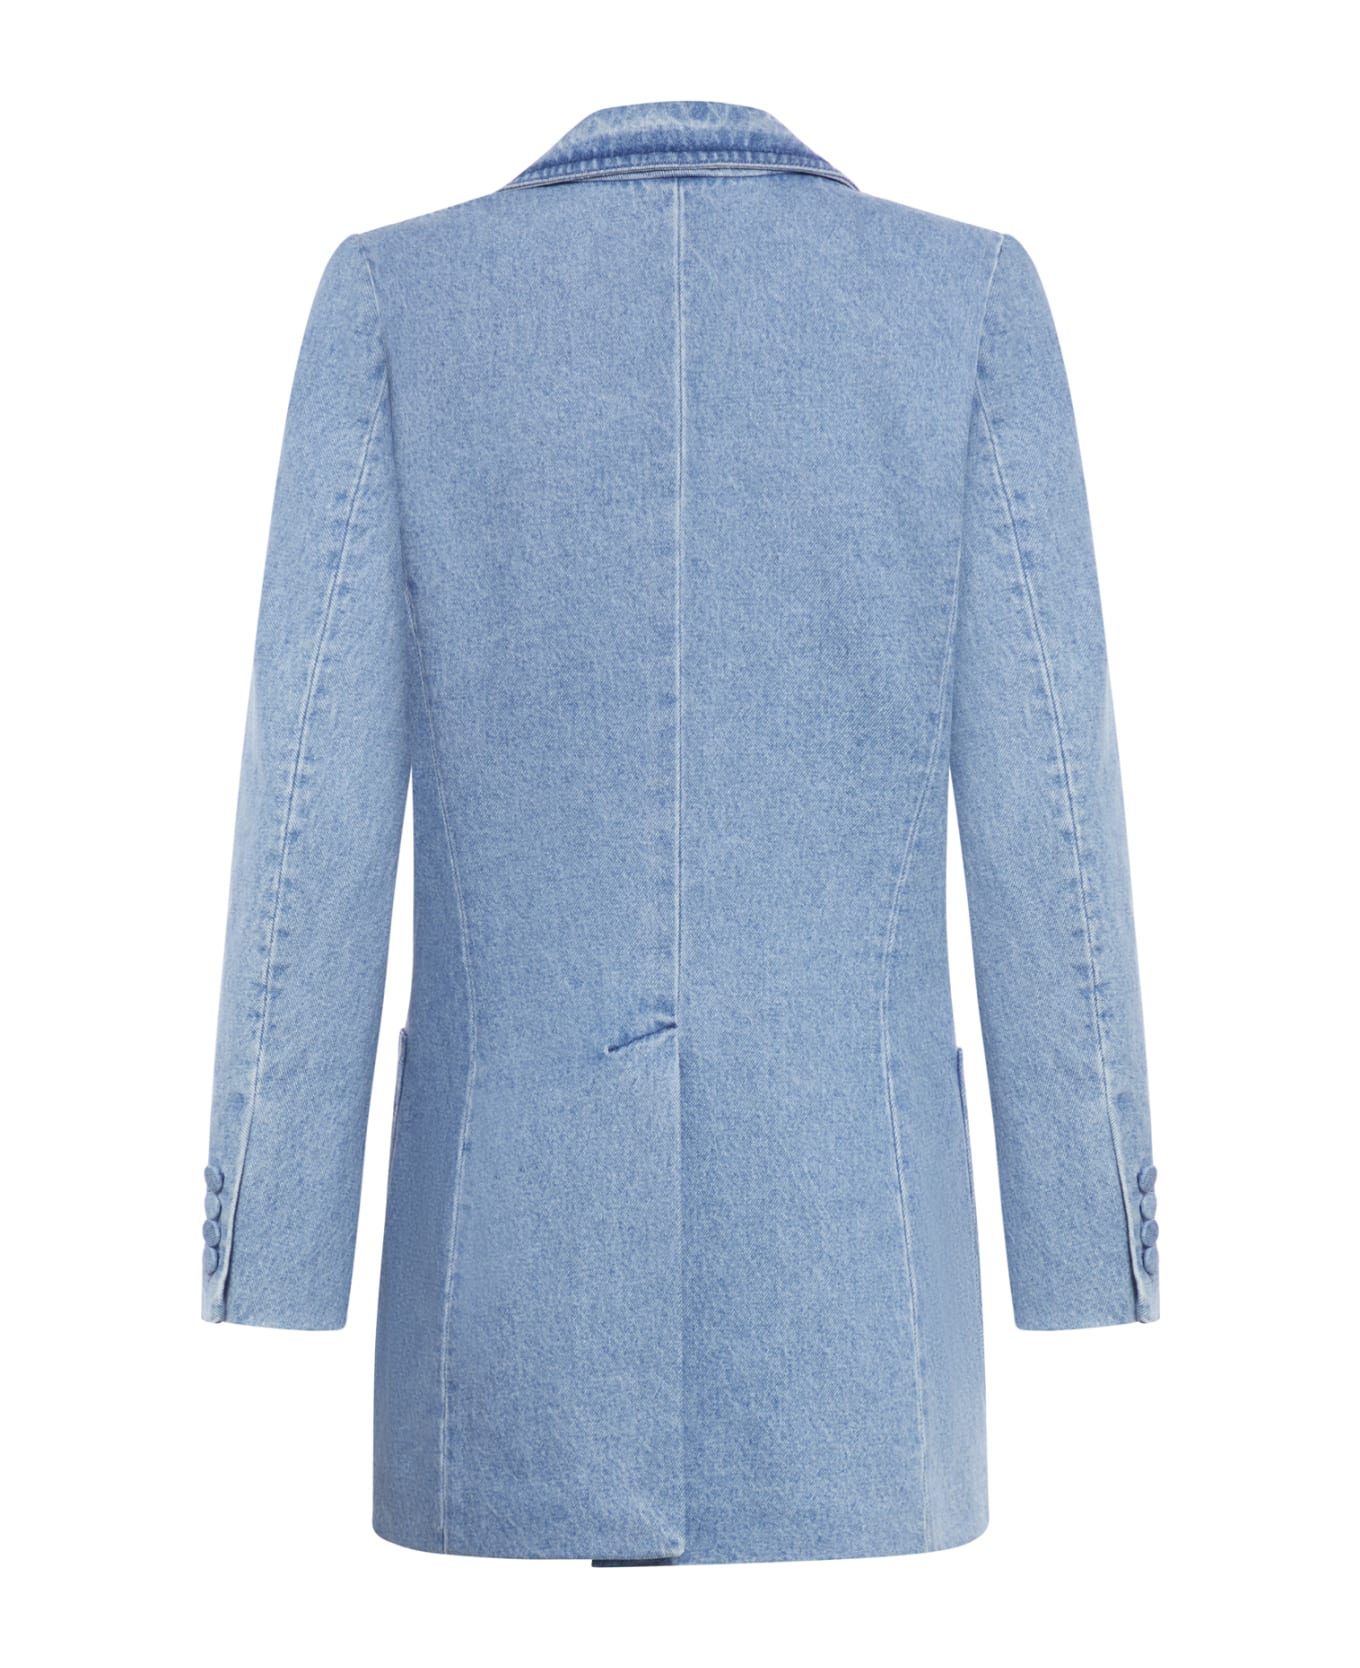 Dries Van Noten 02570-bymee Denim 8451 W.w.jacket - Light Blue コート